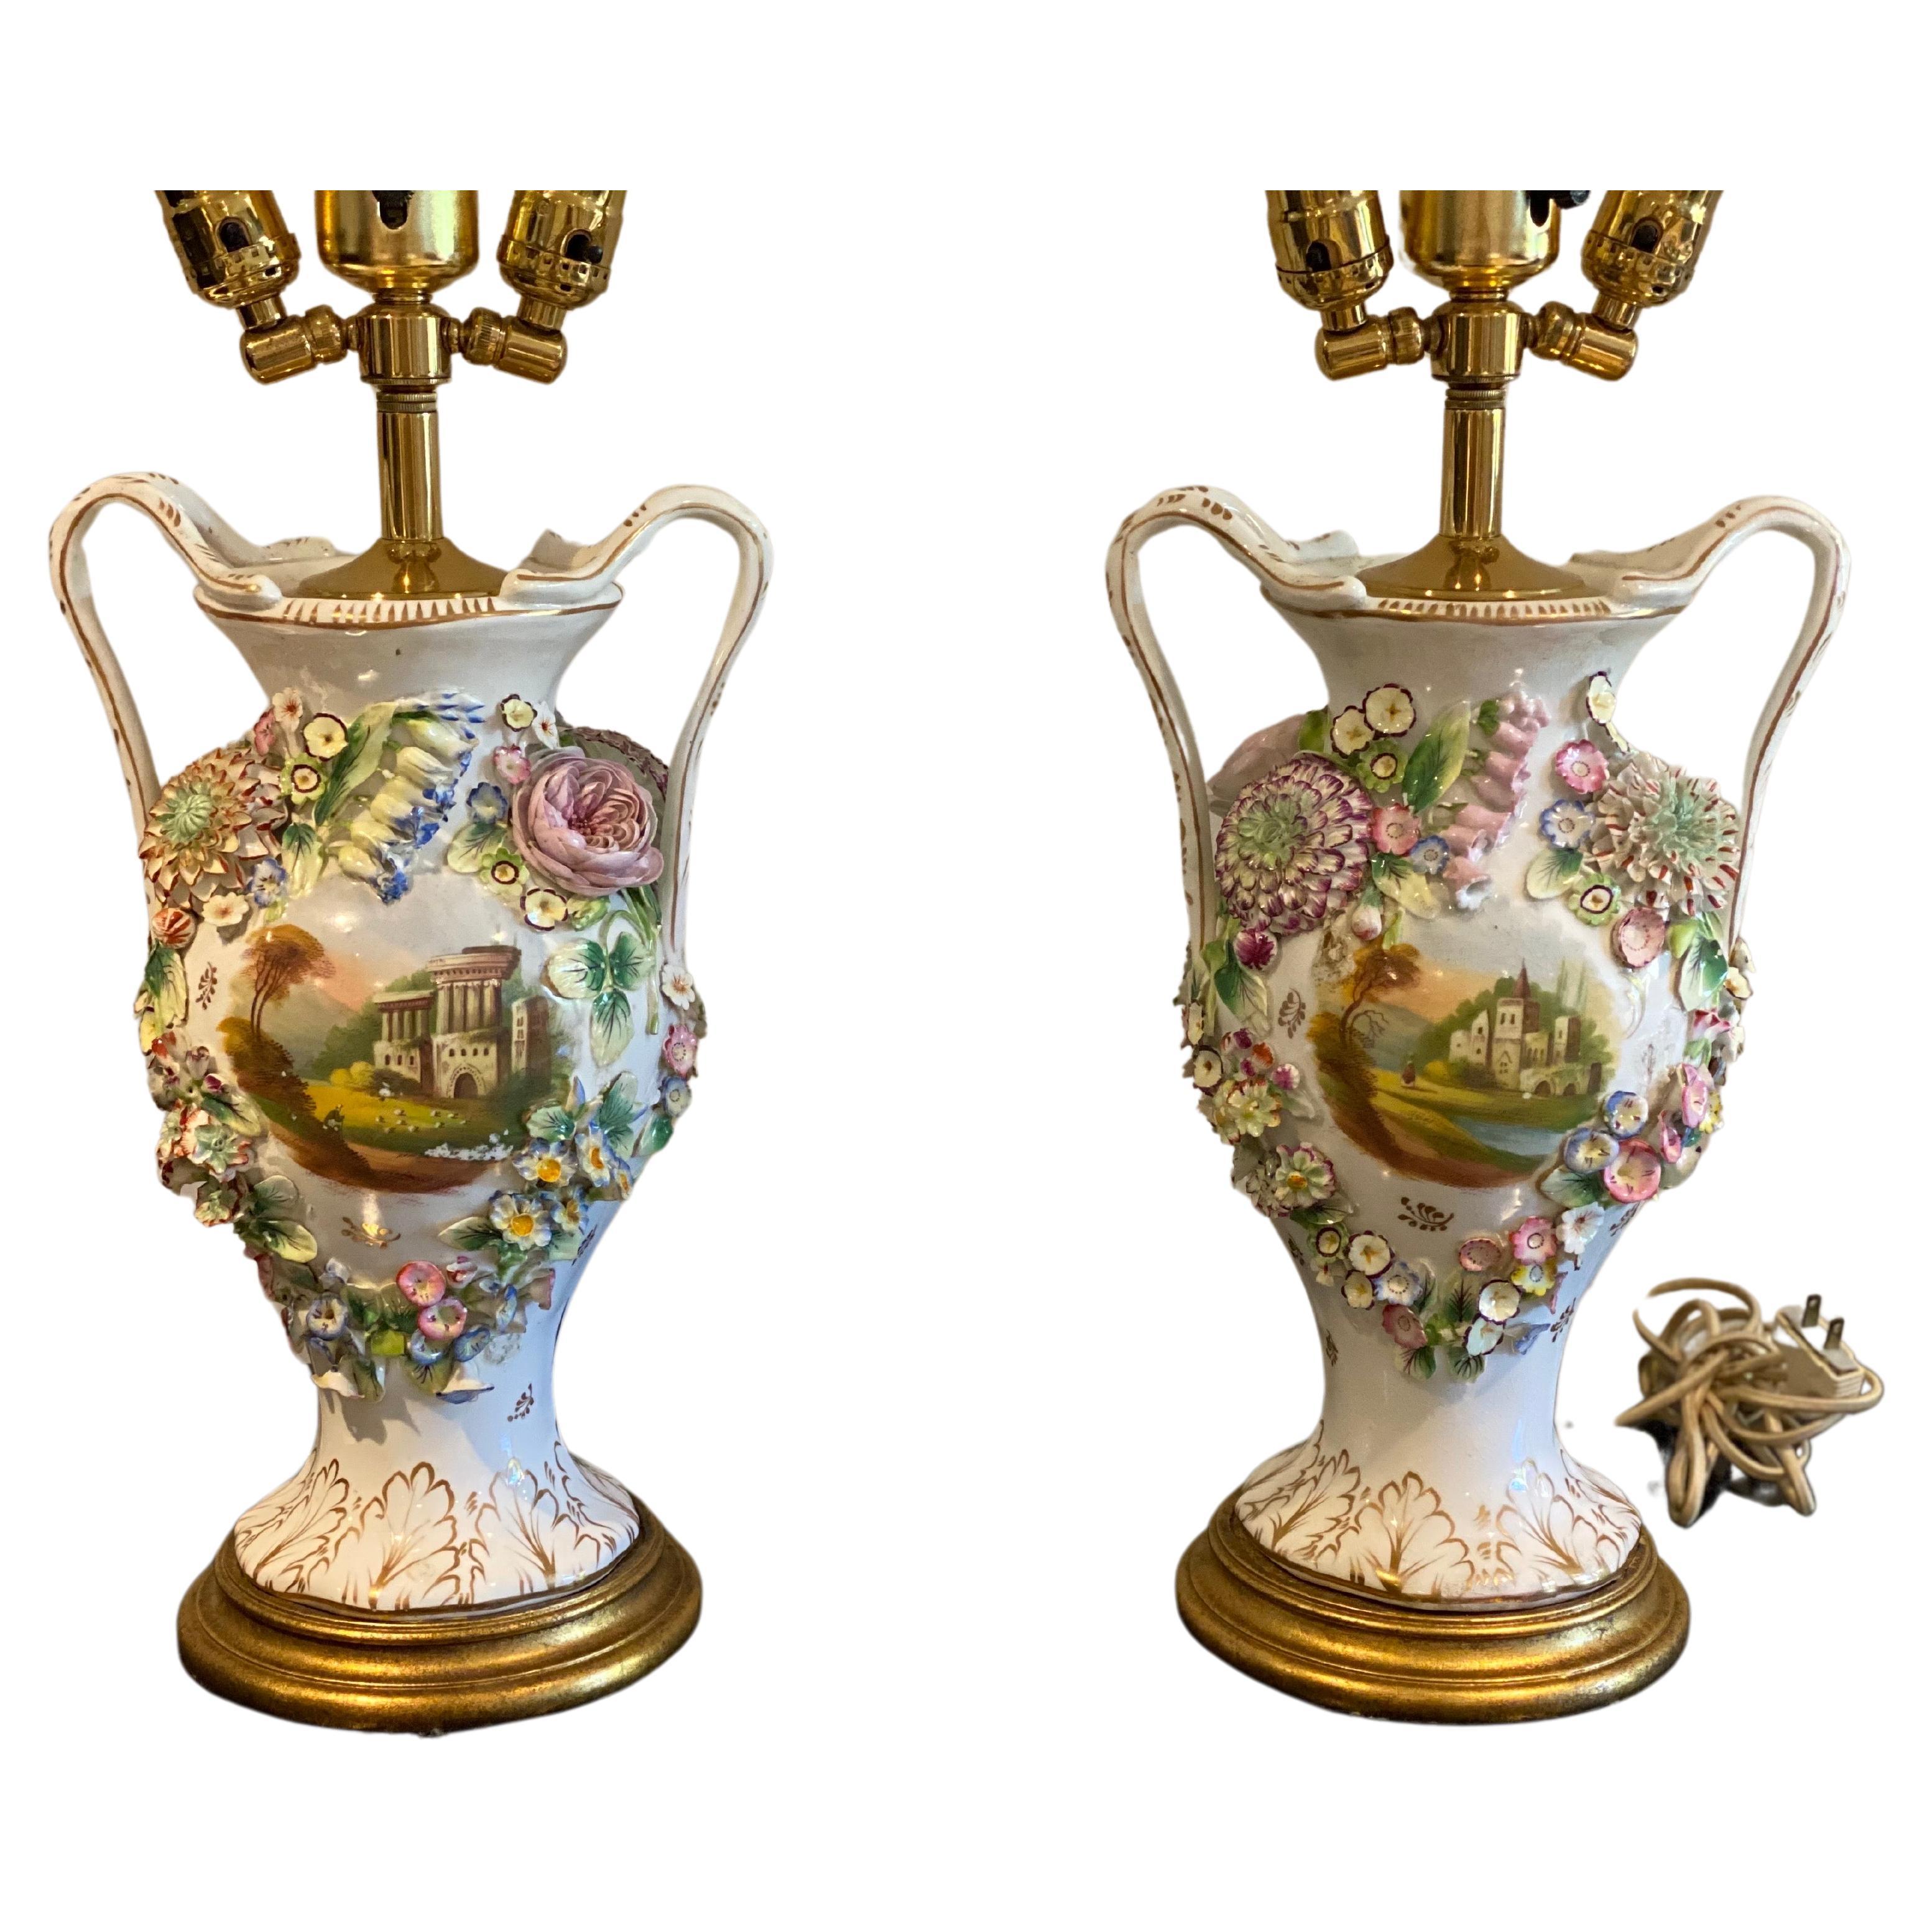 Paar englische zweiarmige Vasen aus Coalport Porcelain aus dem 19. Jahrhundert, umfunktioniert zu Lampen